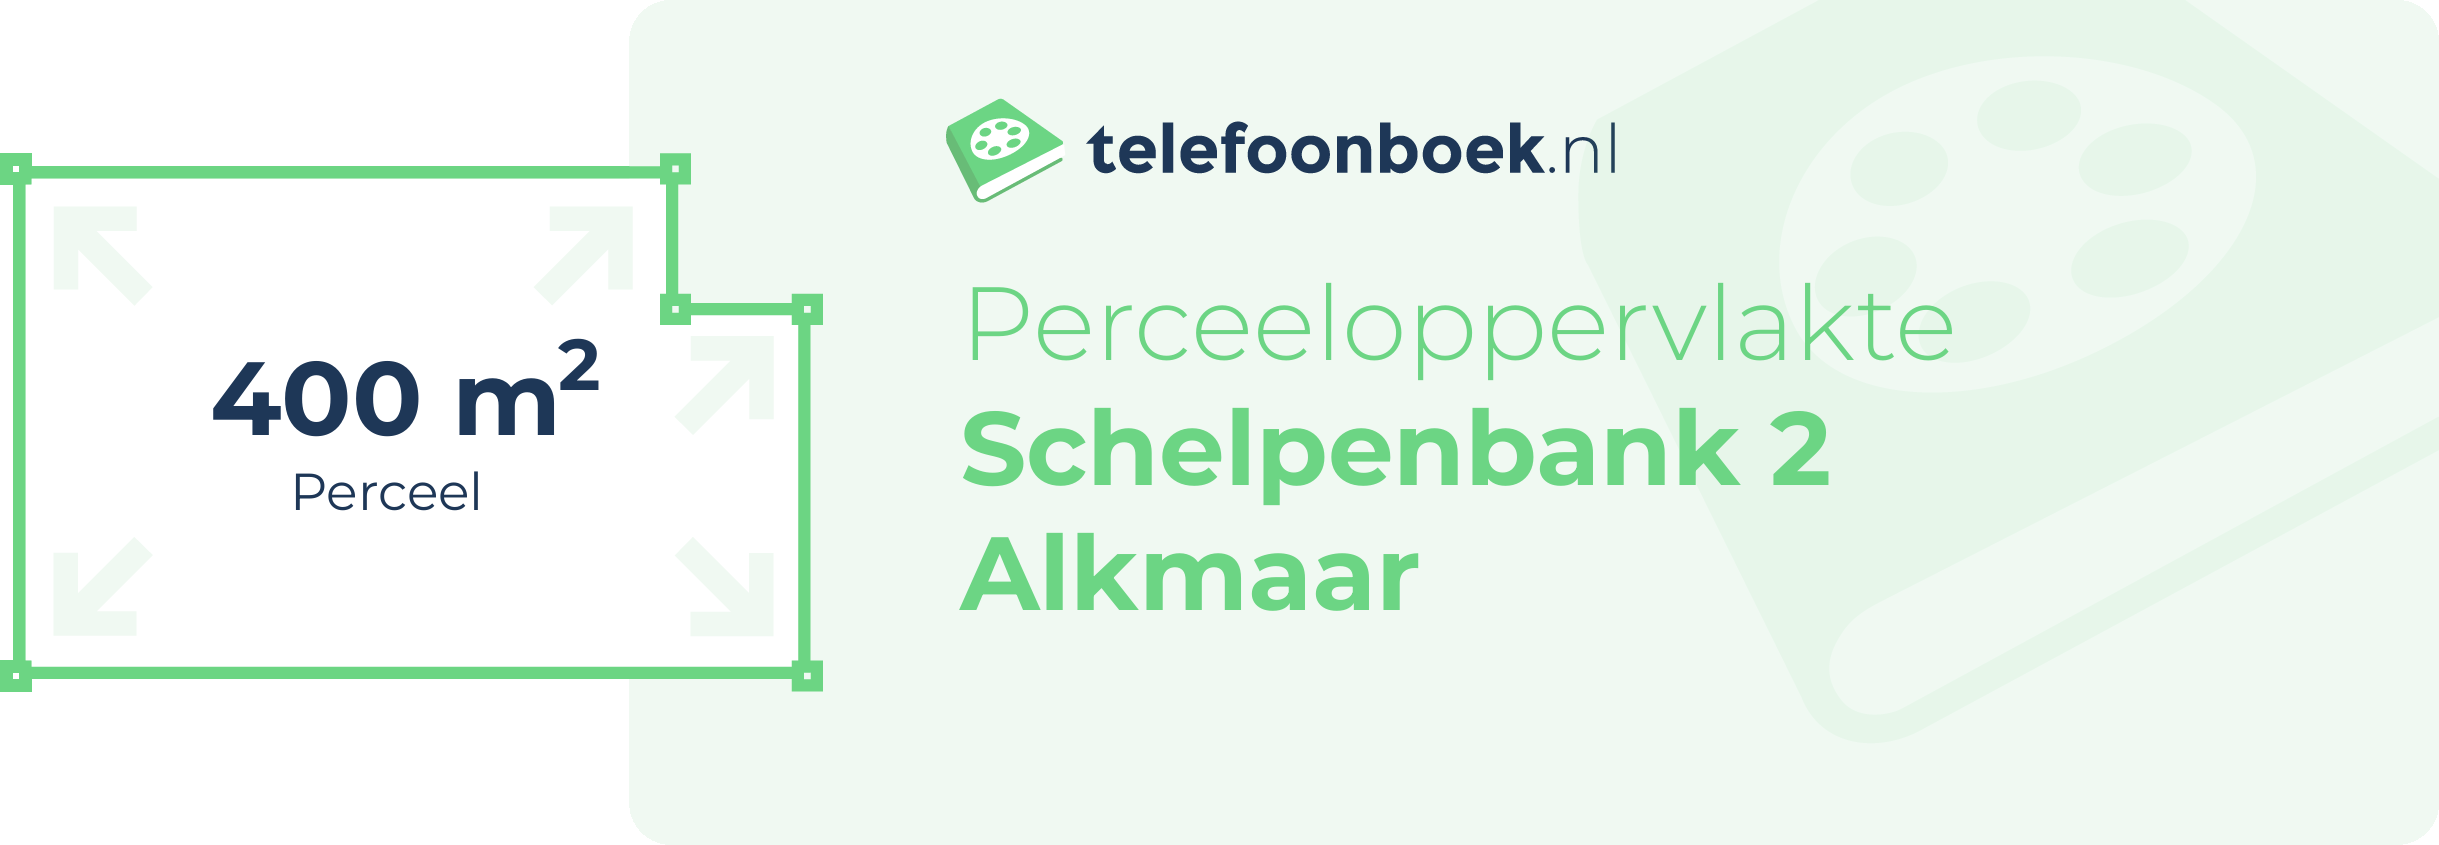 Perceeloppervlakte Schelpenbank 2 Alkmaar